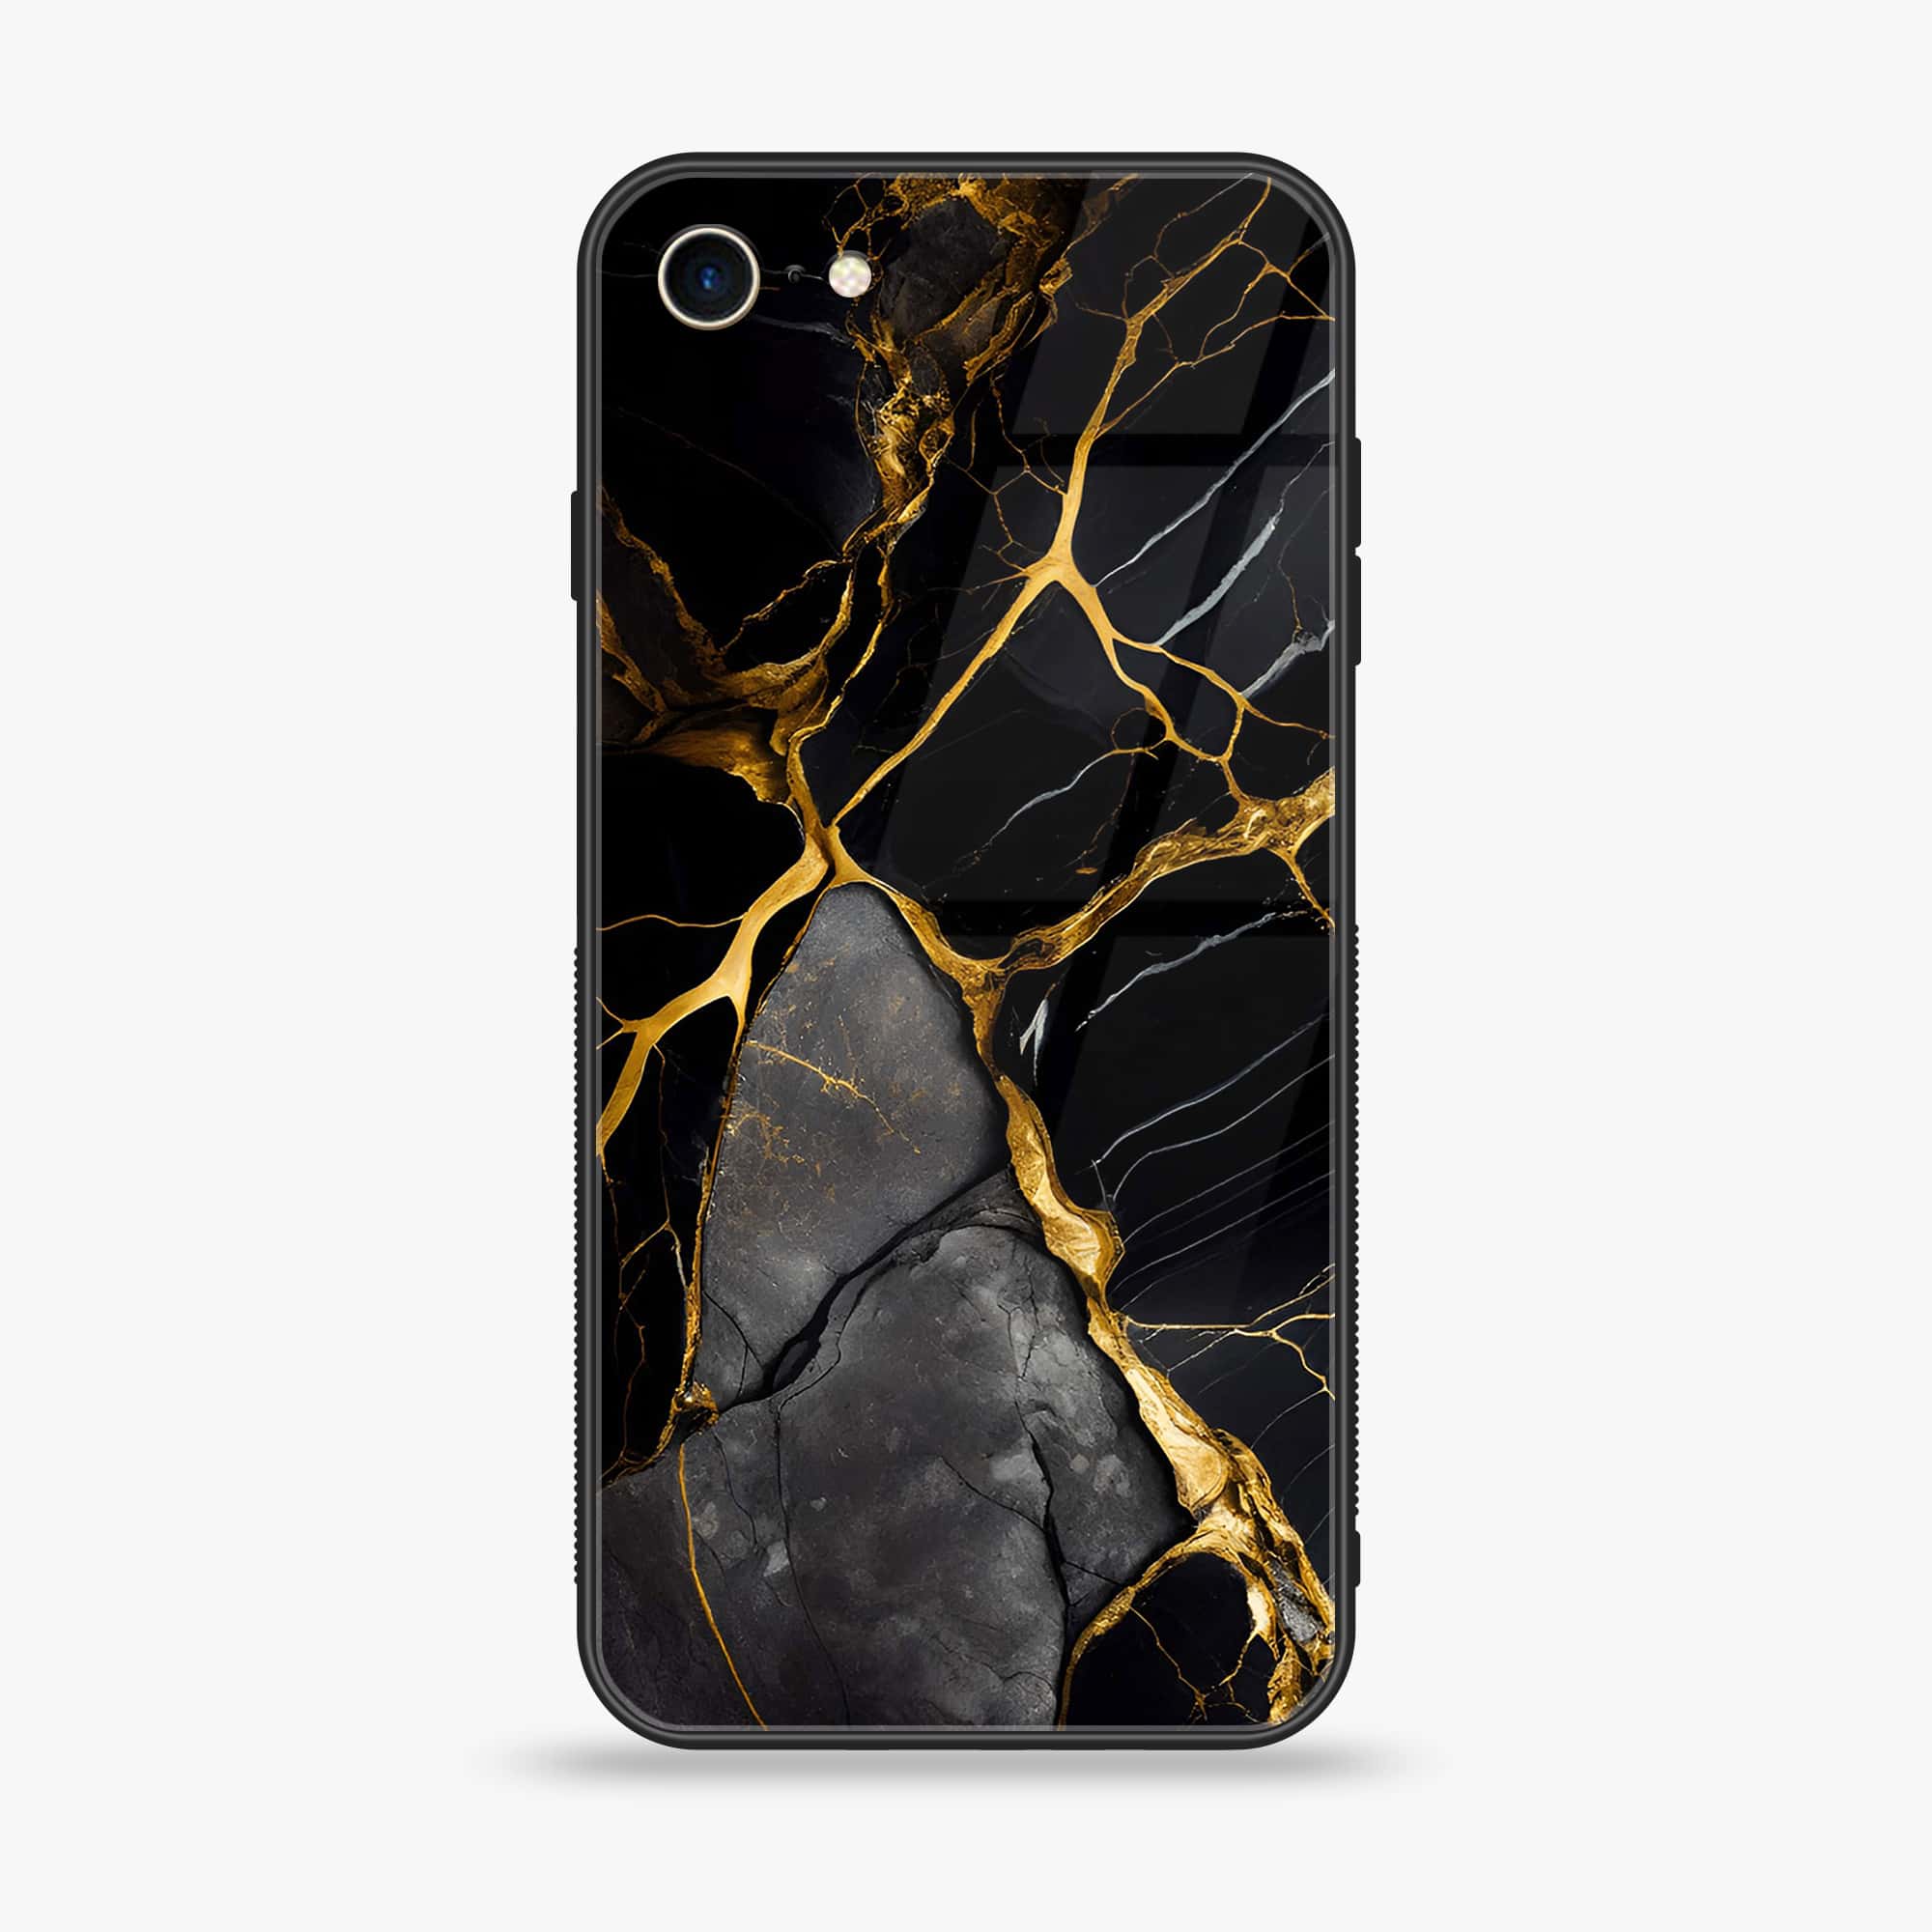 iPhone 6Plus - Liquid Marble Series - Premium Printed Glass soft Bumper shock Proof Case